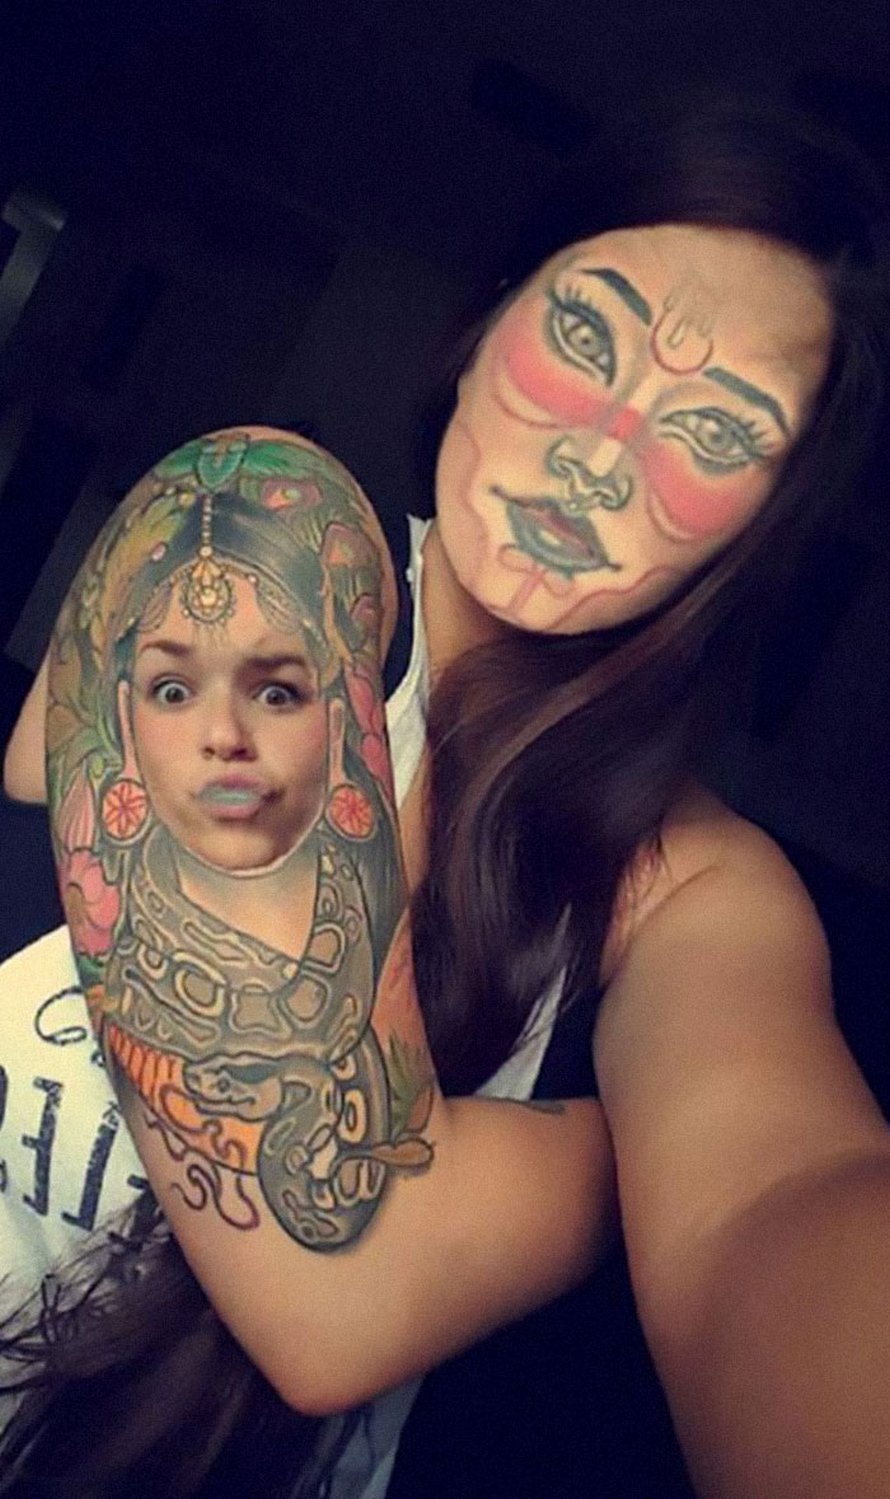 Des gens échangent leur visage avec des tatouages sur leur corps et voici 22 résultats parmi les plus troublants